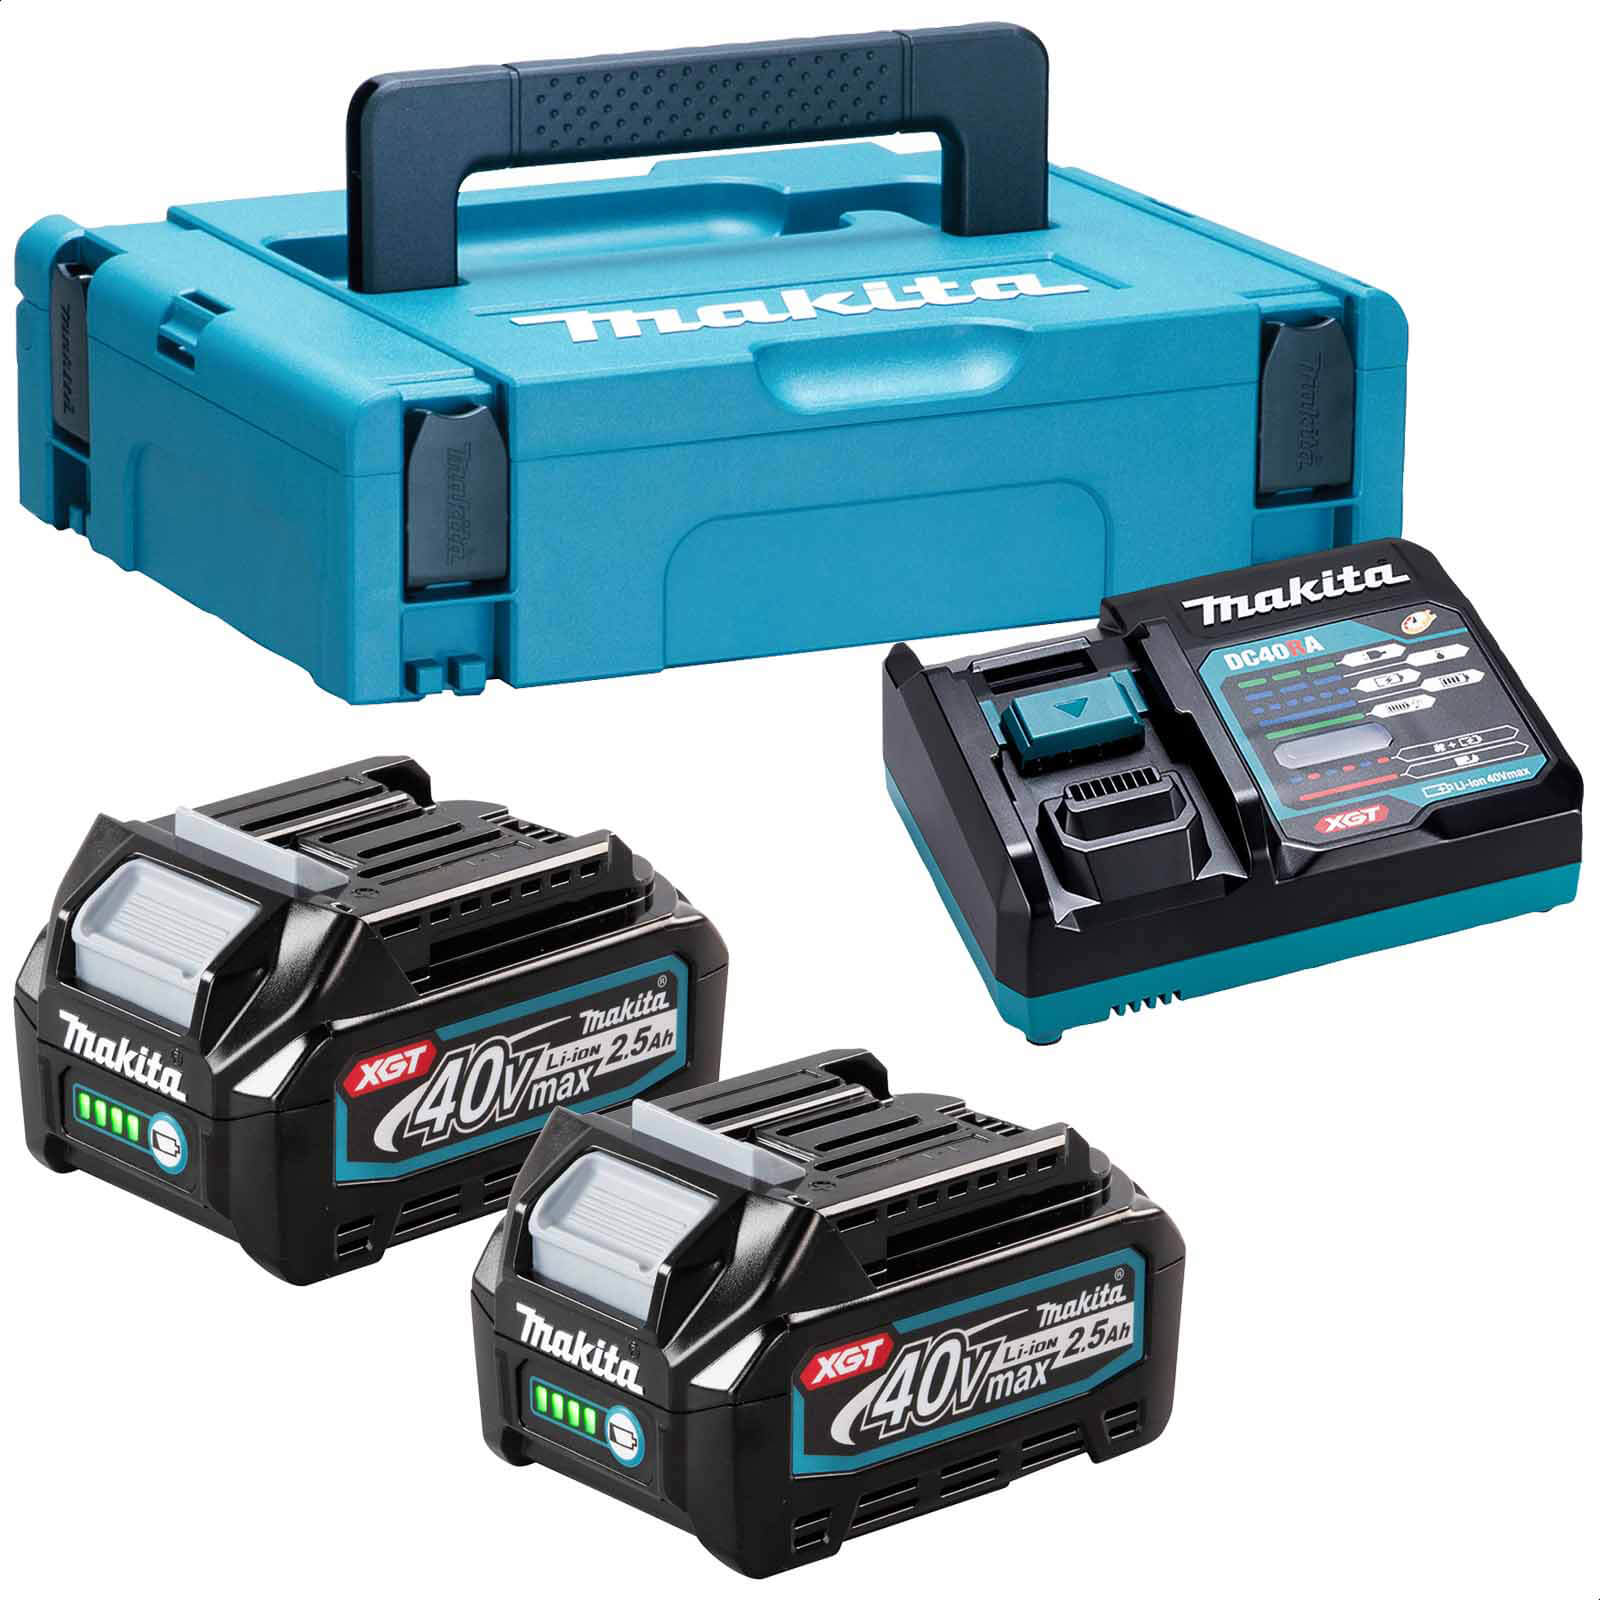 Photos - Power Tool Battery Makita 191J85-8 40v Max XGT Cordless 2 Battery 2.5ah and Charger Kit 2.5ah 